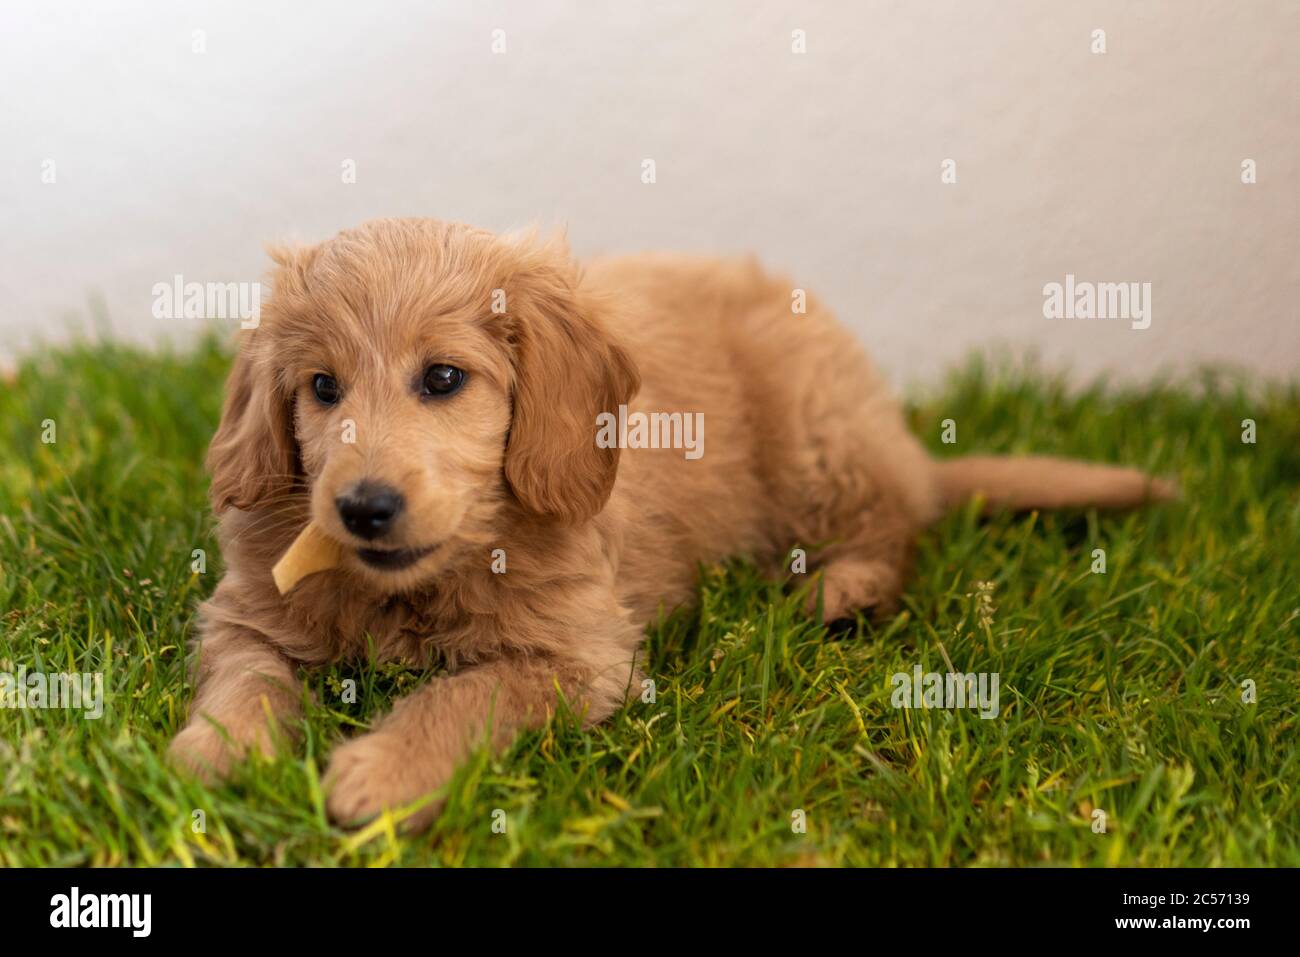 golden retriever toy poodle